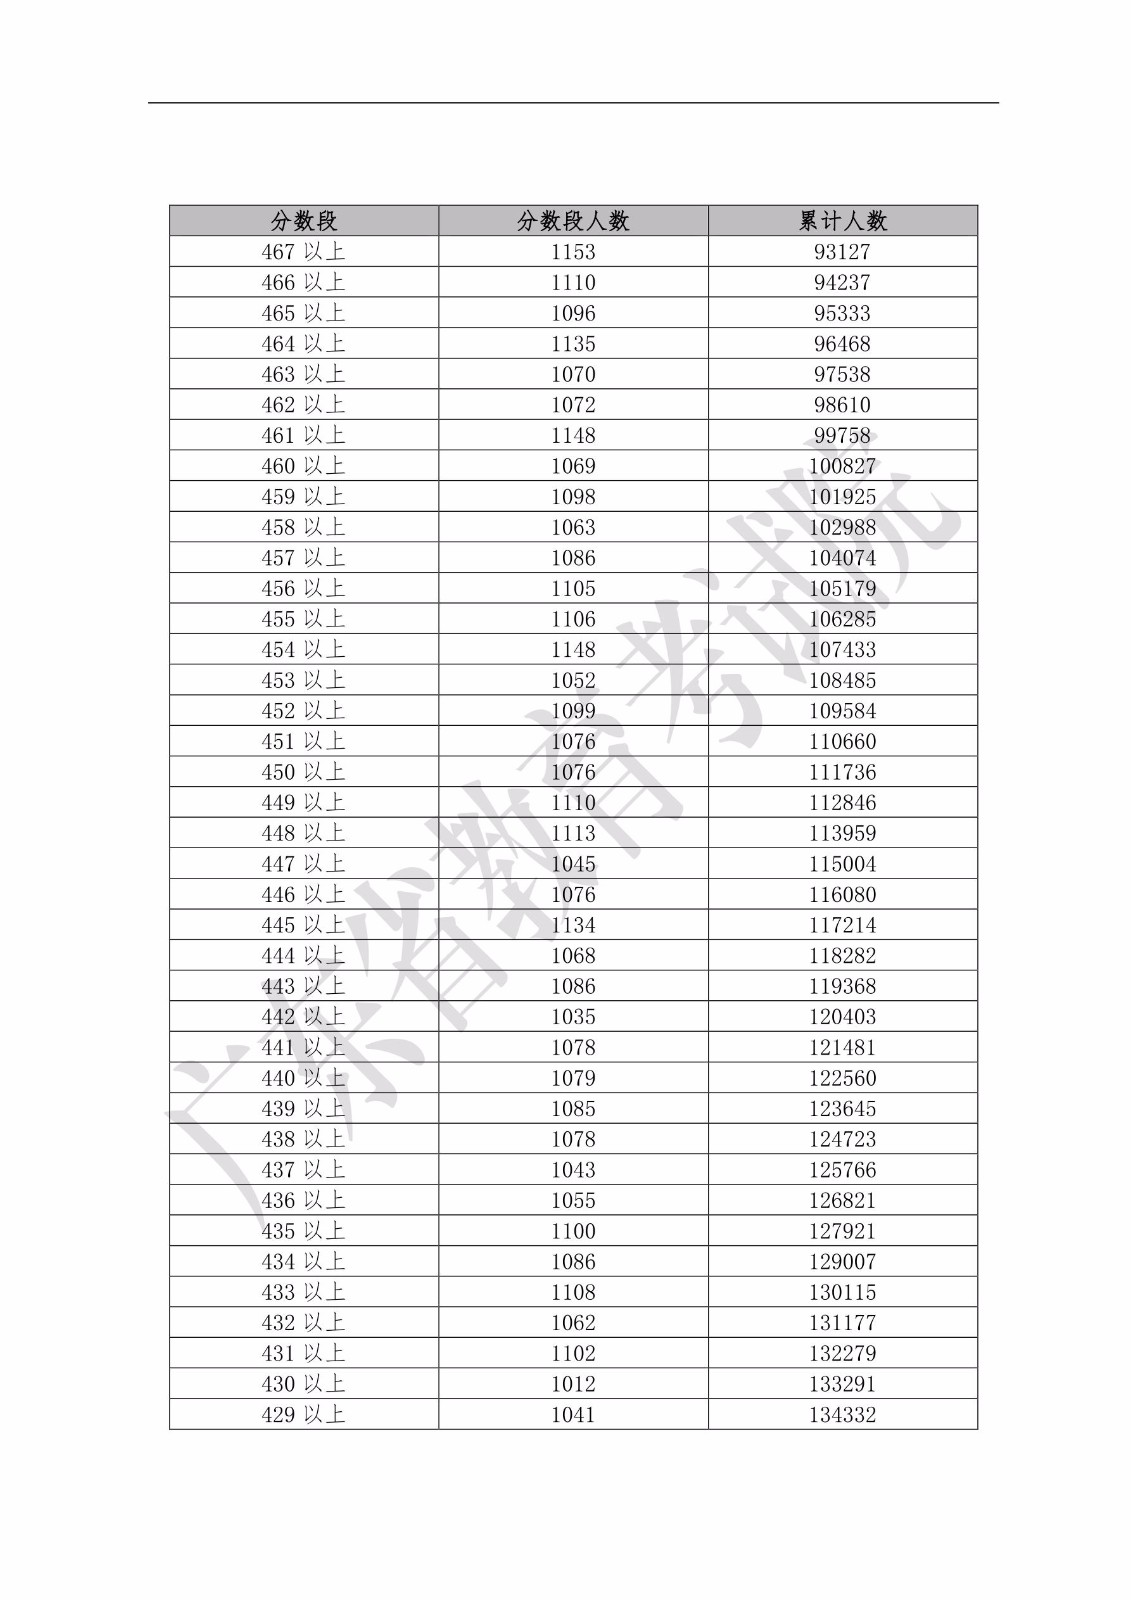 2019年广东省普通高考文科类分数段统计表